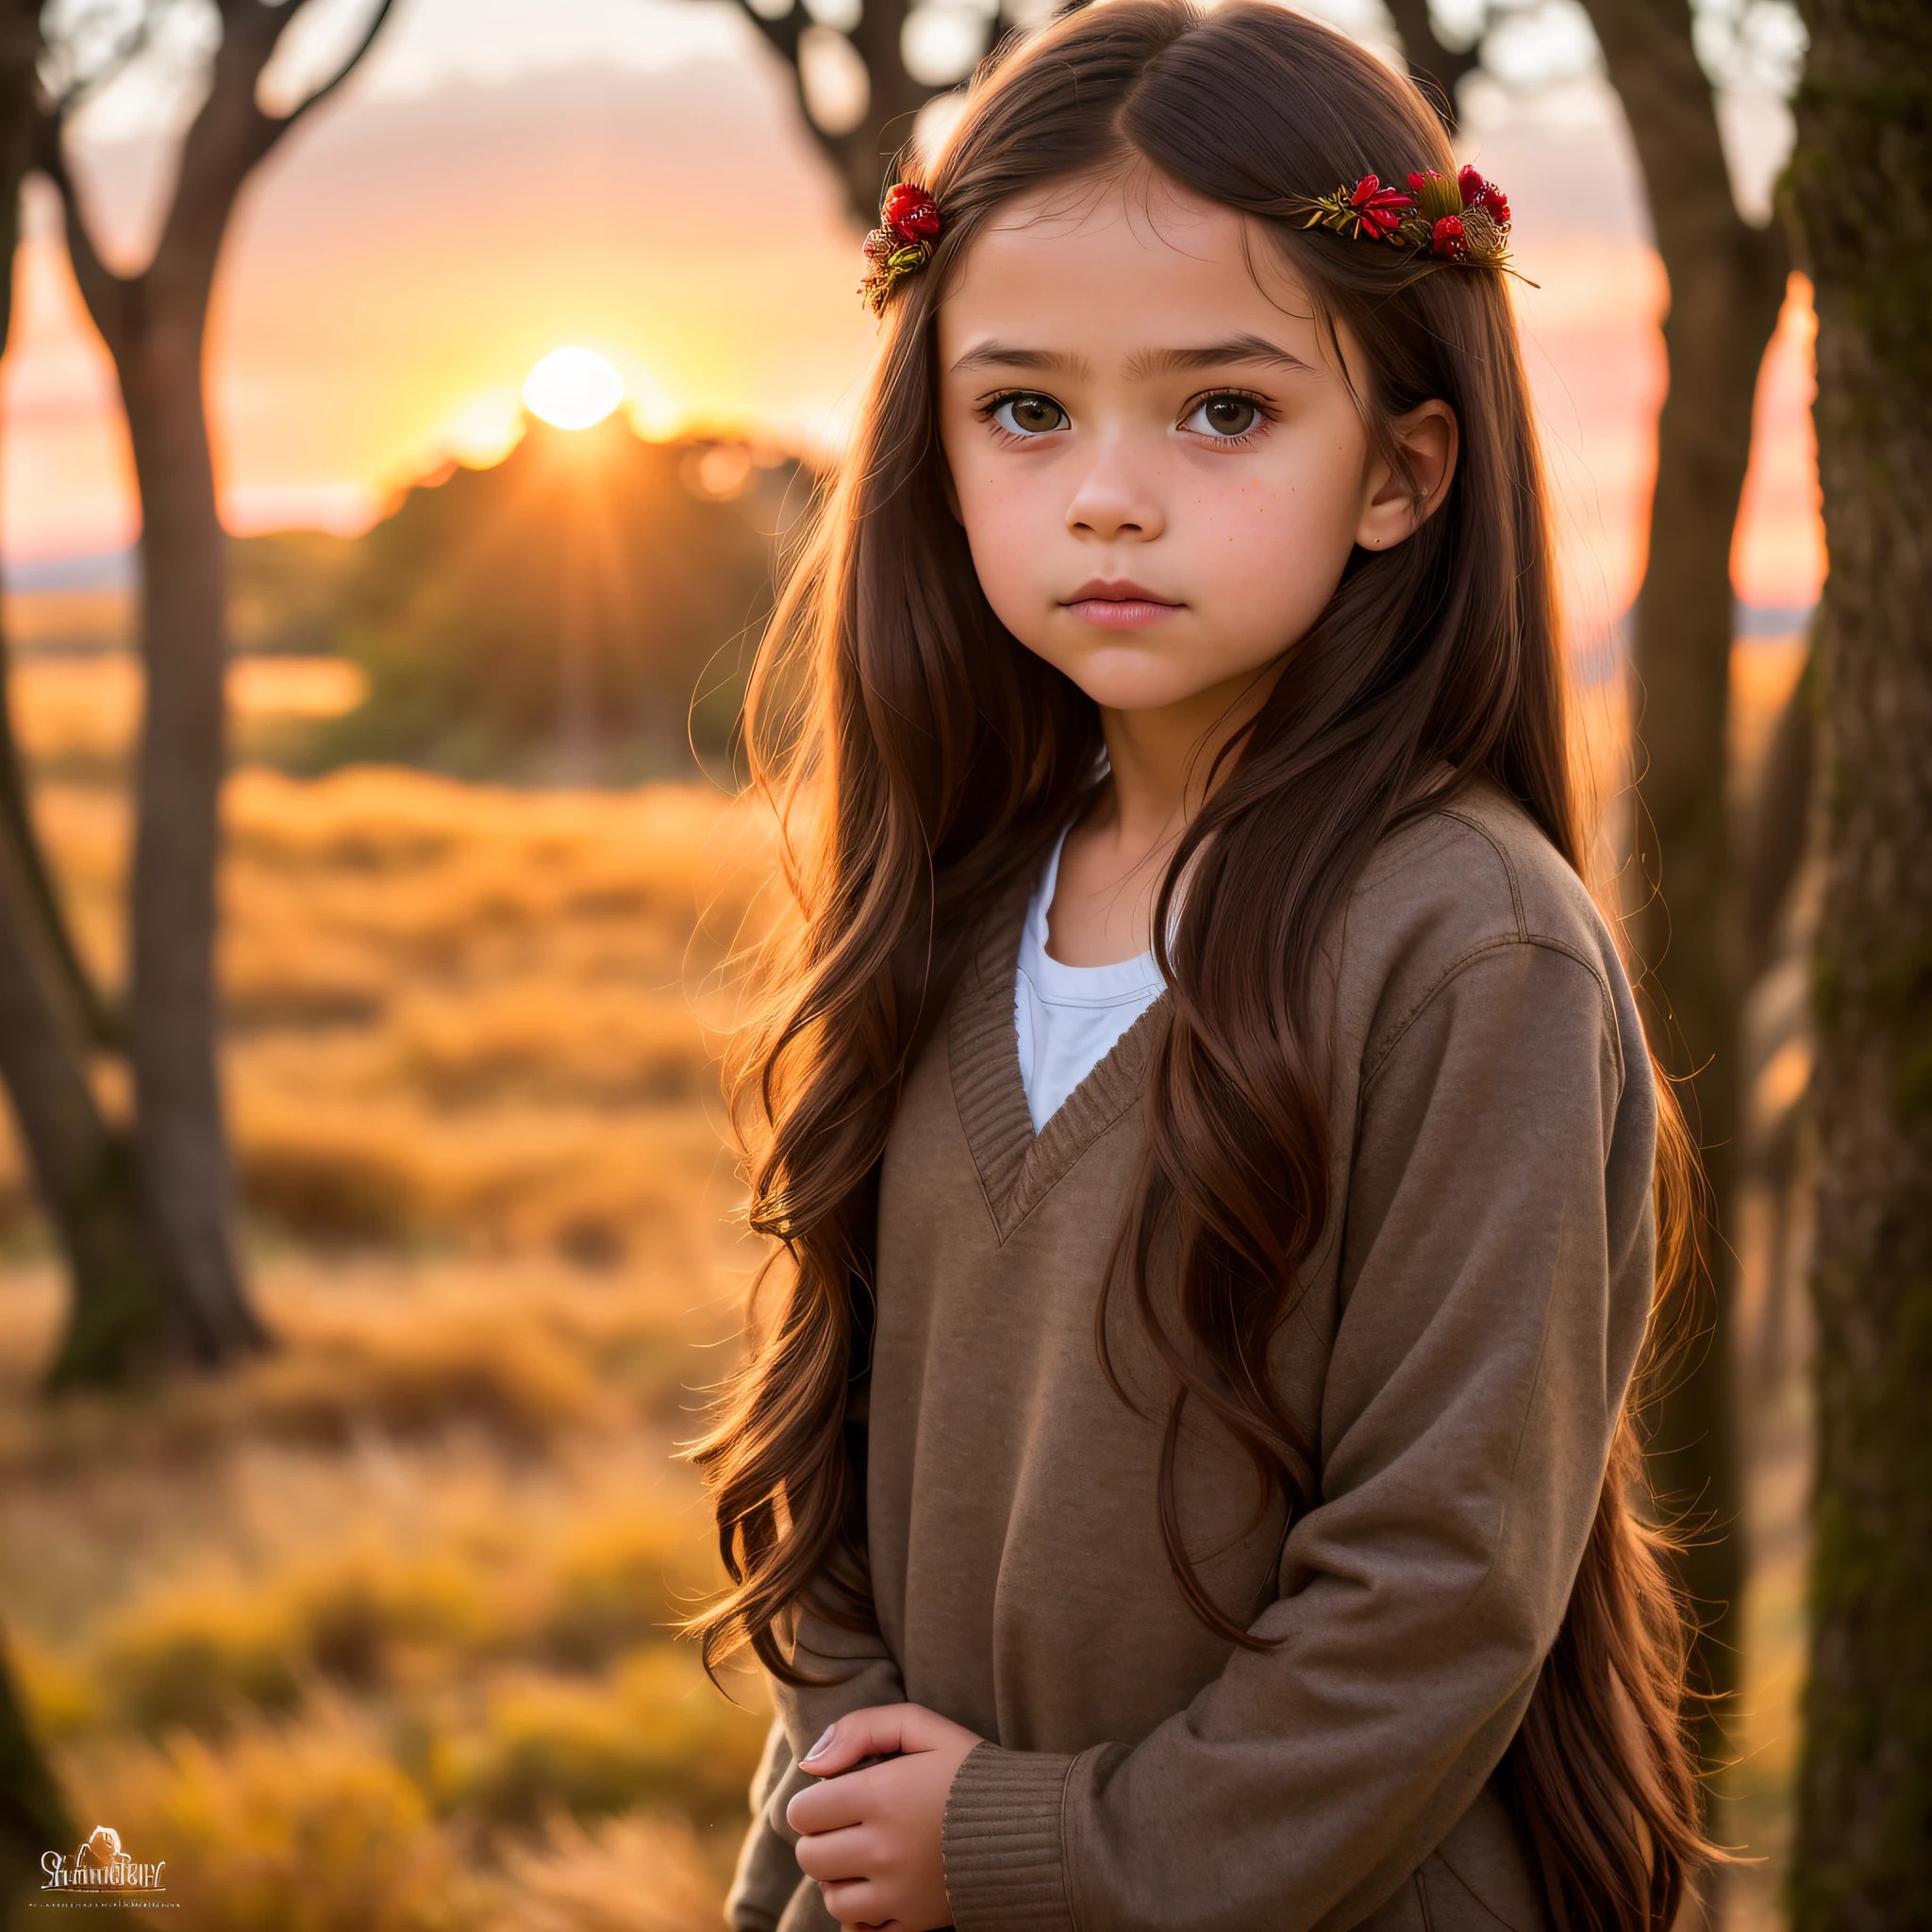 RAW-Foto, (ein Porträtfoto eines 8 Jahre alten Mädchens: 1.2), (dunkler Wald), Sweatshirt, (hochdetaillierte Haut: 1.0), detaillierte Augen, 8k uhd, dslr, sanfte Beleuchtung, beste Qualität, Filmkorn, Fujifilm XT3, (Stil „Mädchen von nebenan“.: 1.2), detaillierte Augen, lange Haare, (braune Haare:1.1), (Schatten:0.1), (afrikanisches Mädchen:1.3), Fantasie, (Filmische Beleuchtung, Sonnenuntergang),  Kranz, Nicht für die Arbeit geeignet,